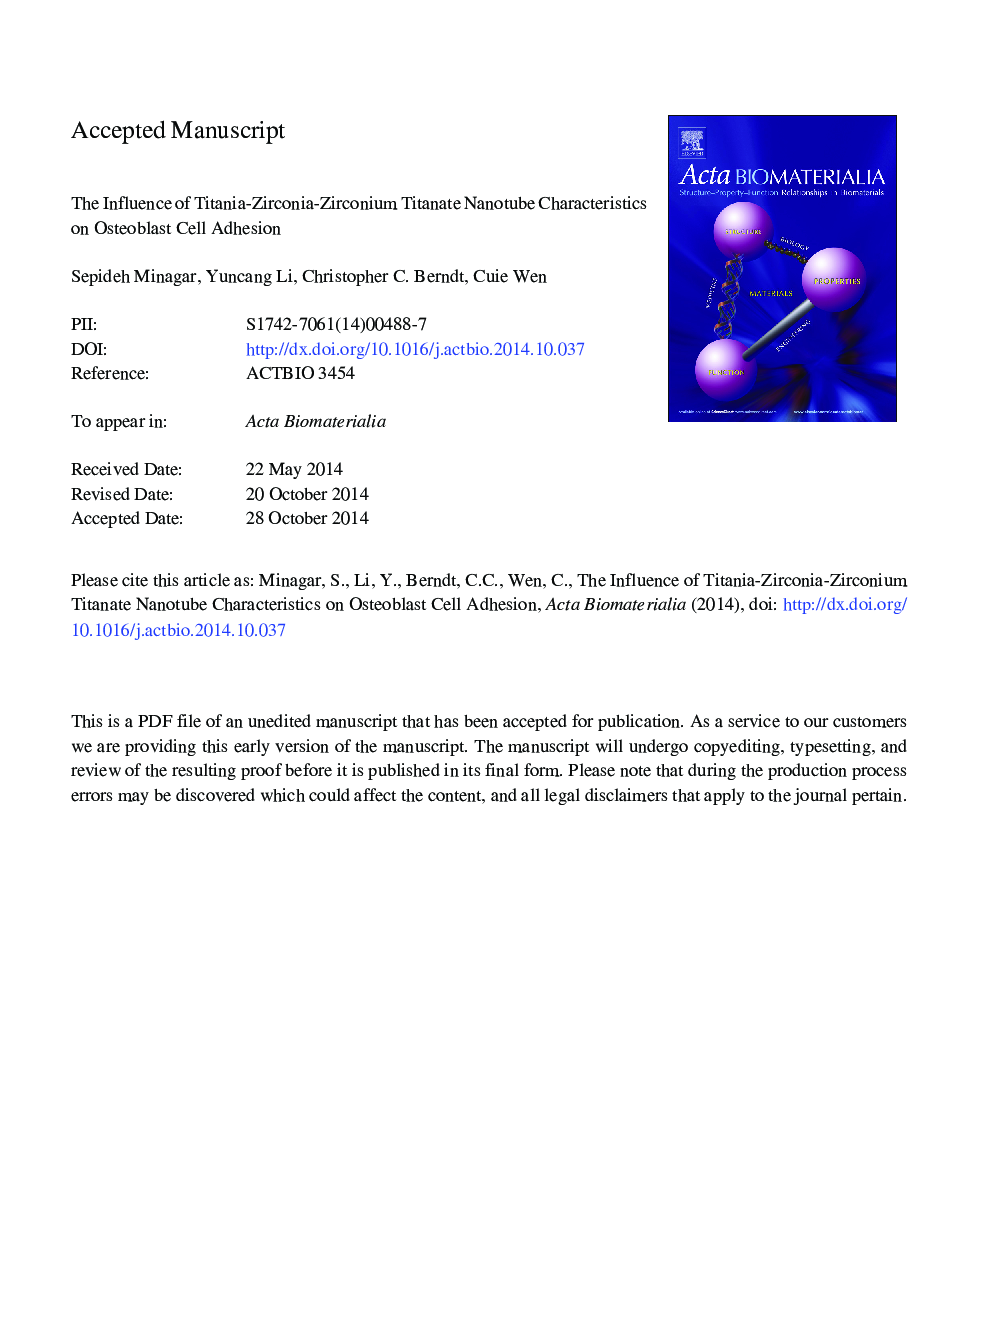 اثر نانولوله های تیتانات تیتانیوم-زیرکونیا-زیرورونیوم بر چسبندگی سلول های استئوبلاست 